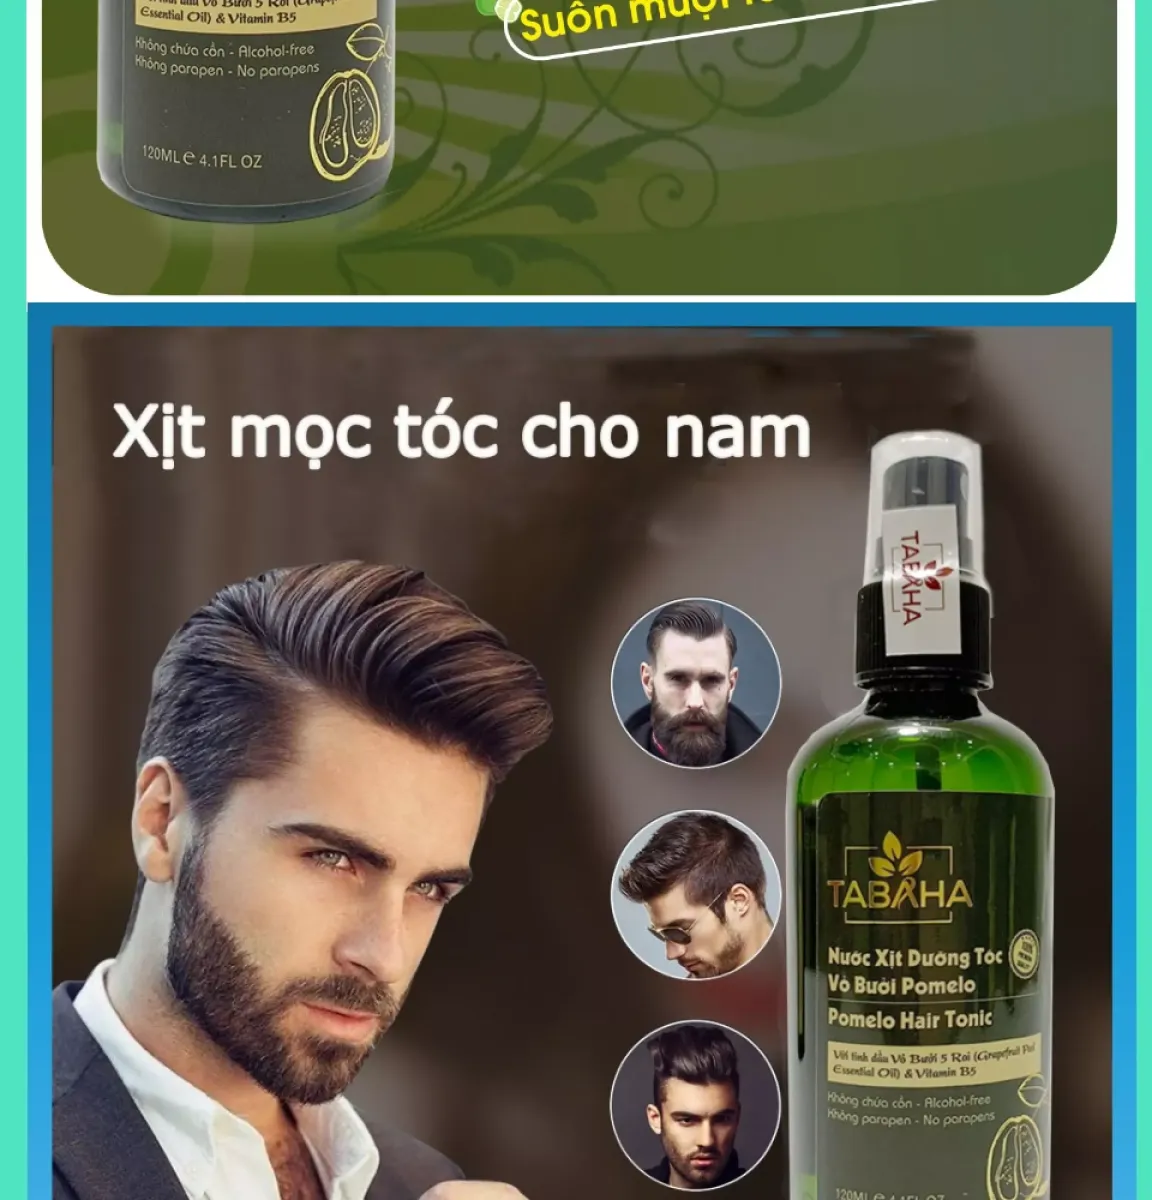 Nước dưỡng tóc tinh dầu bưởi cho Nam giới Pomelo hair tonic Tabaha 120ml   Shopee Việt Nam